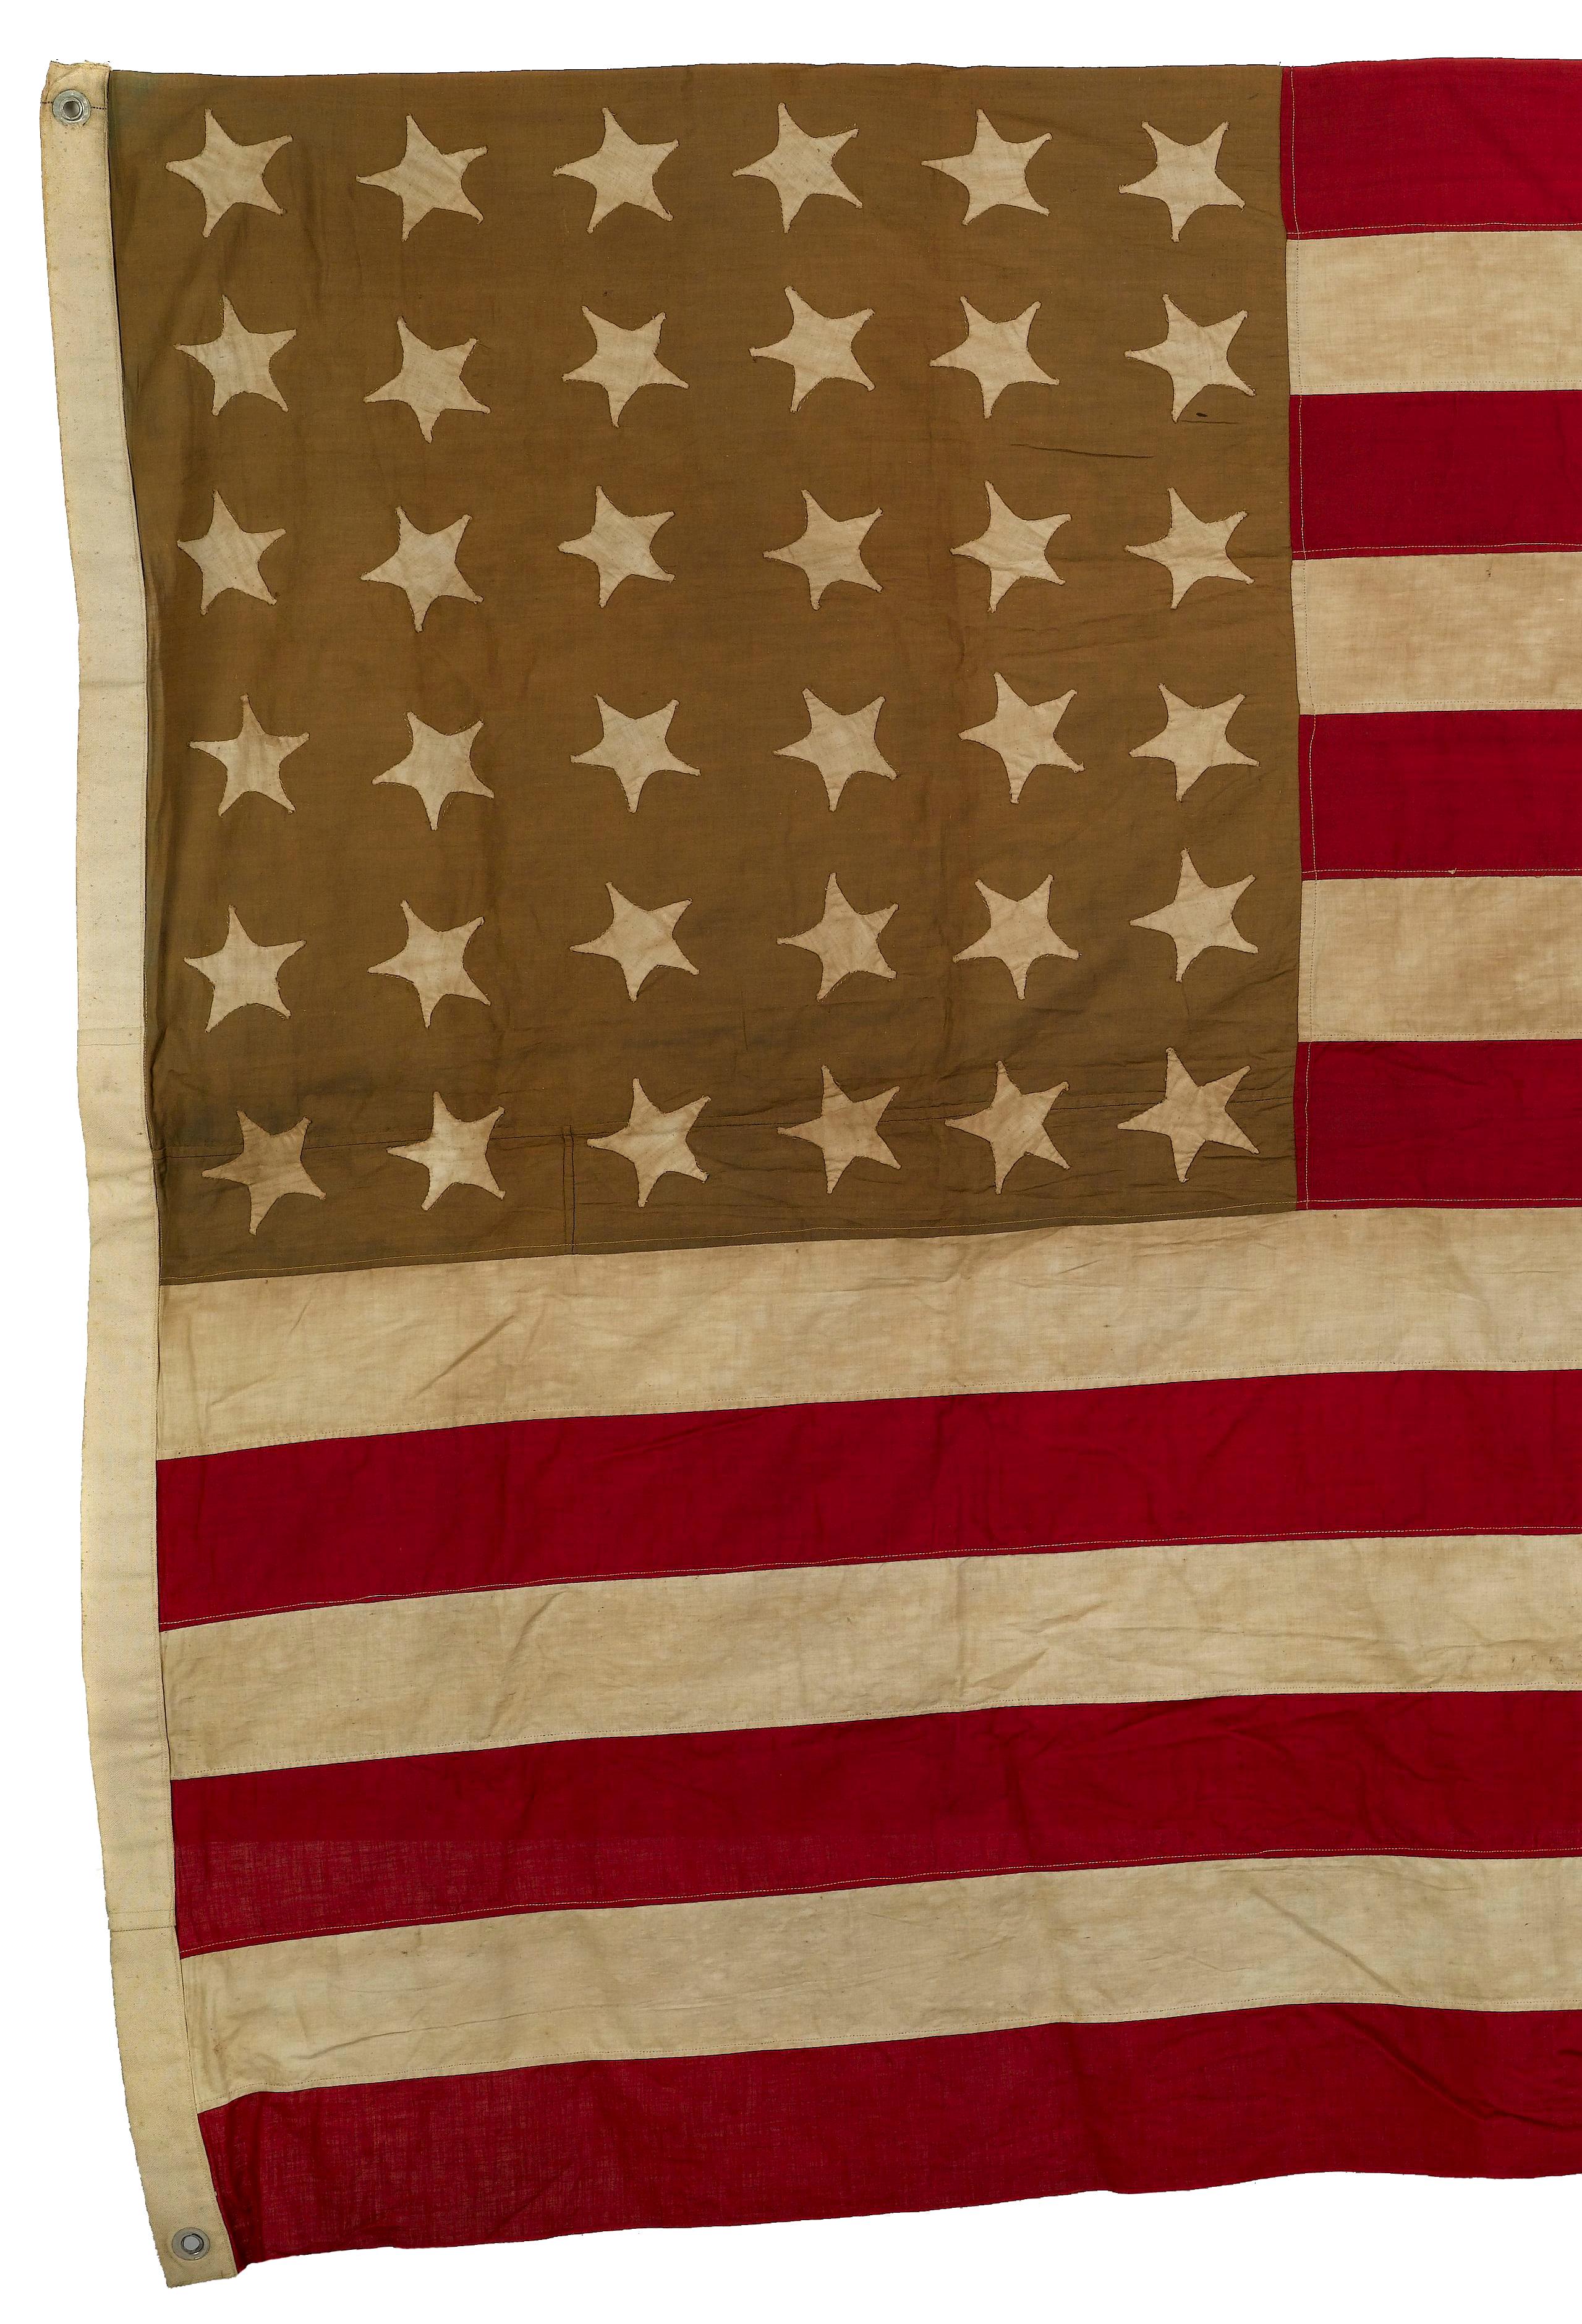 American 36-Star Civil War Flag, Circa 1864-65